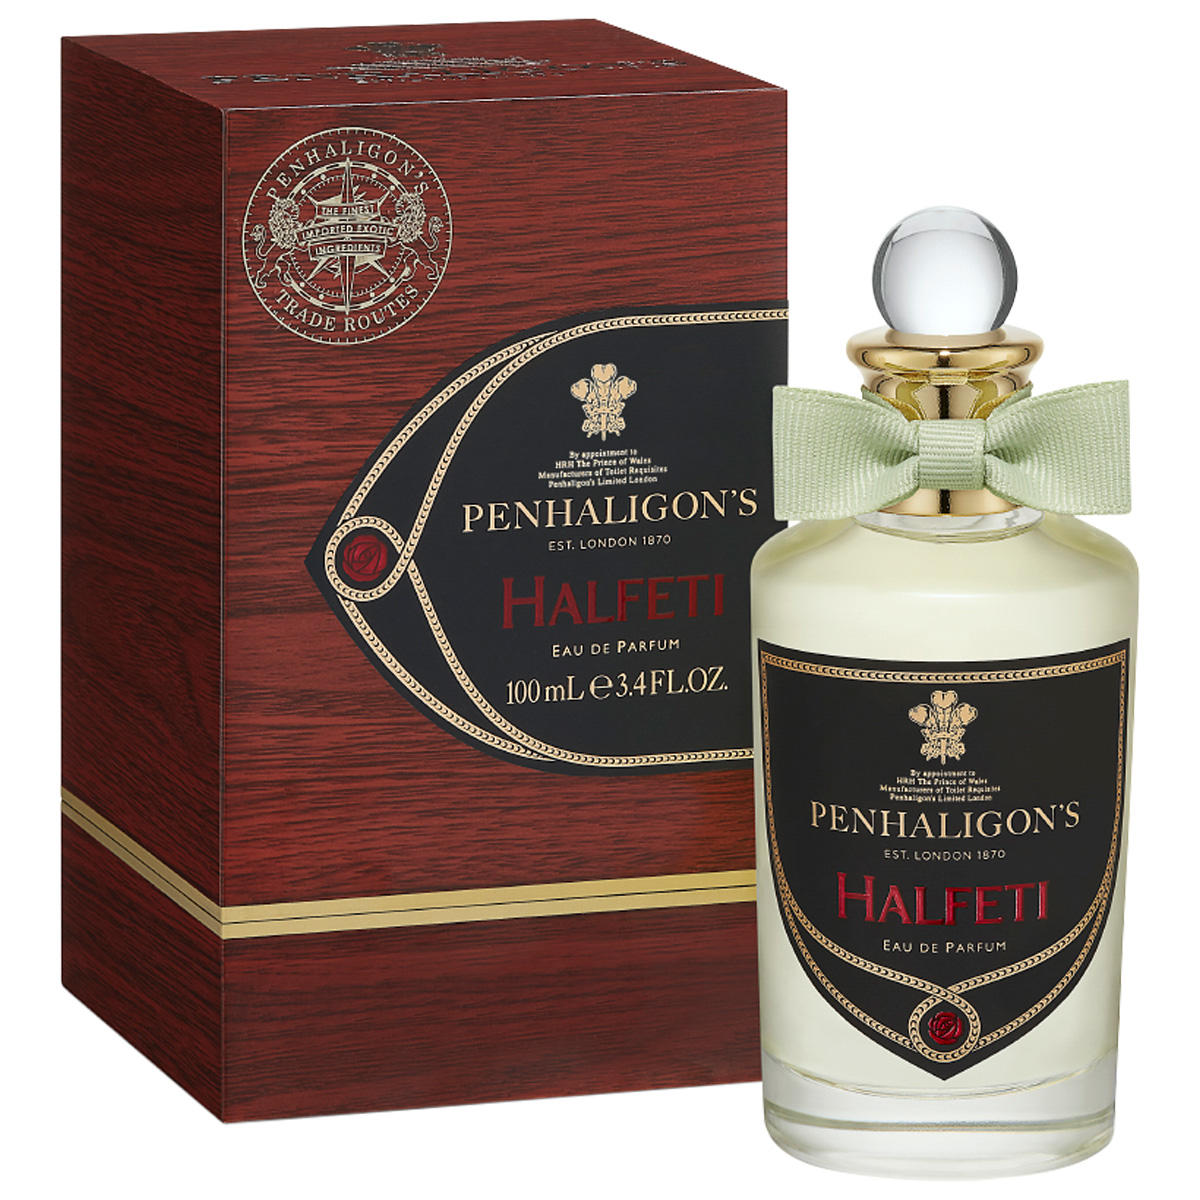 PENHALIGON'S Trade Routes Halfeti Eau de Parfum 100 ml - 2